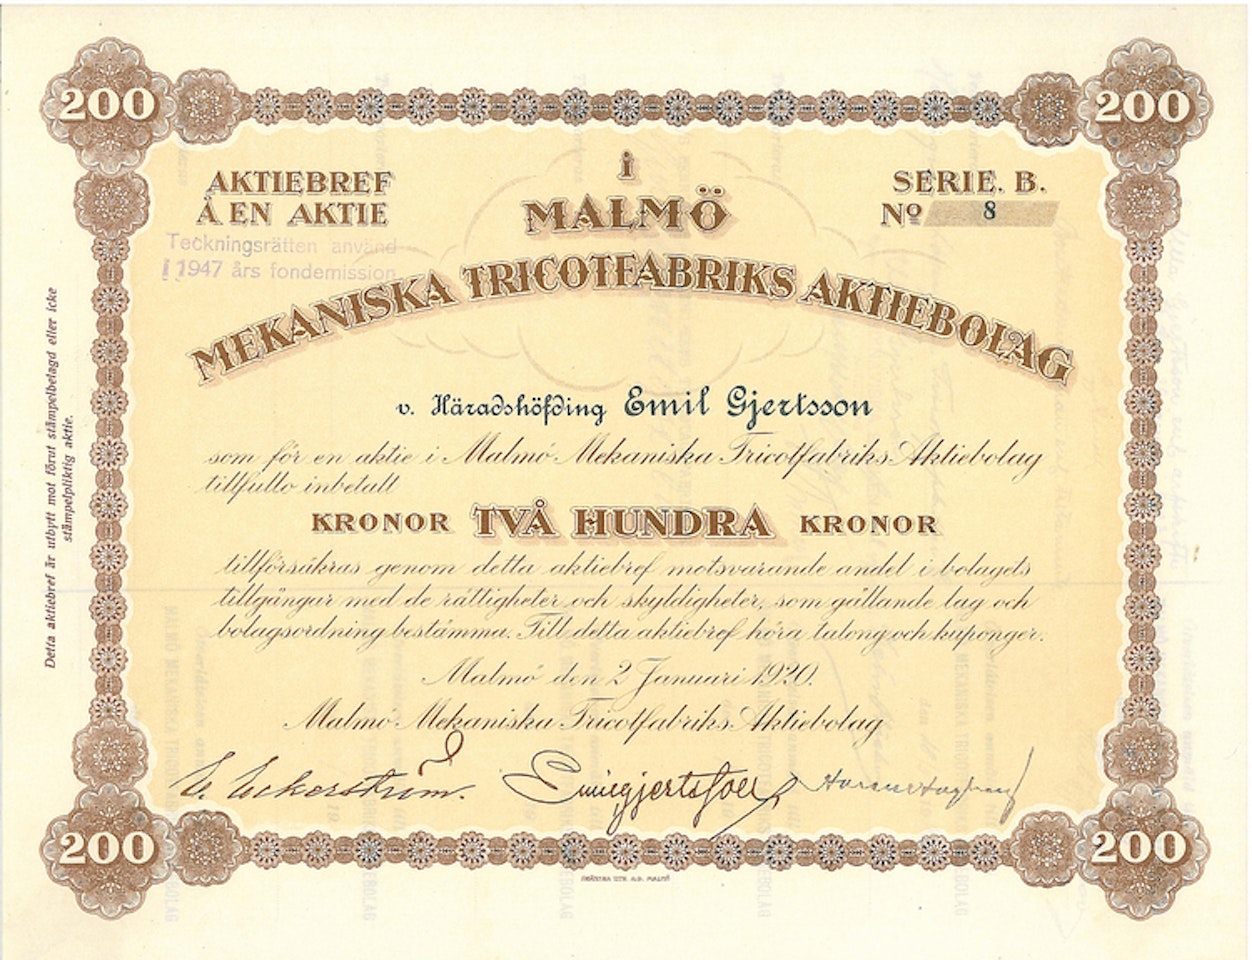 Malmö Mekaniska Tricotfabriks AB, 1920